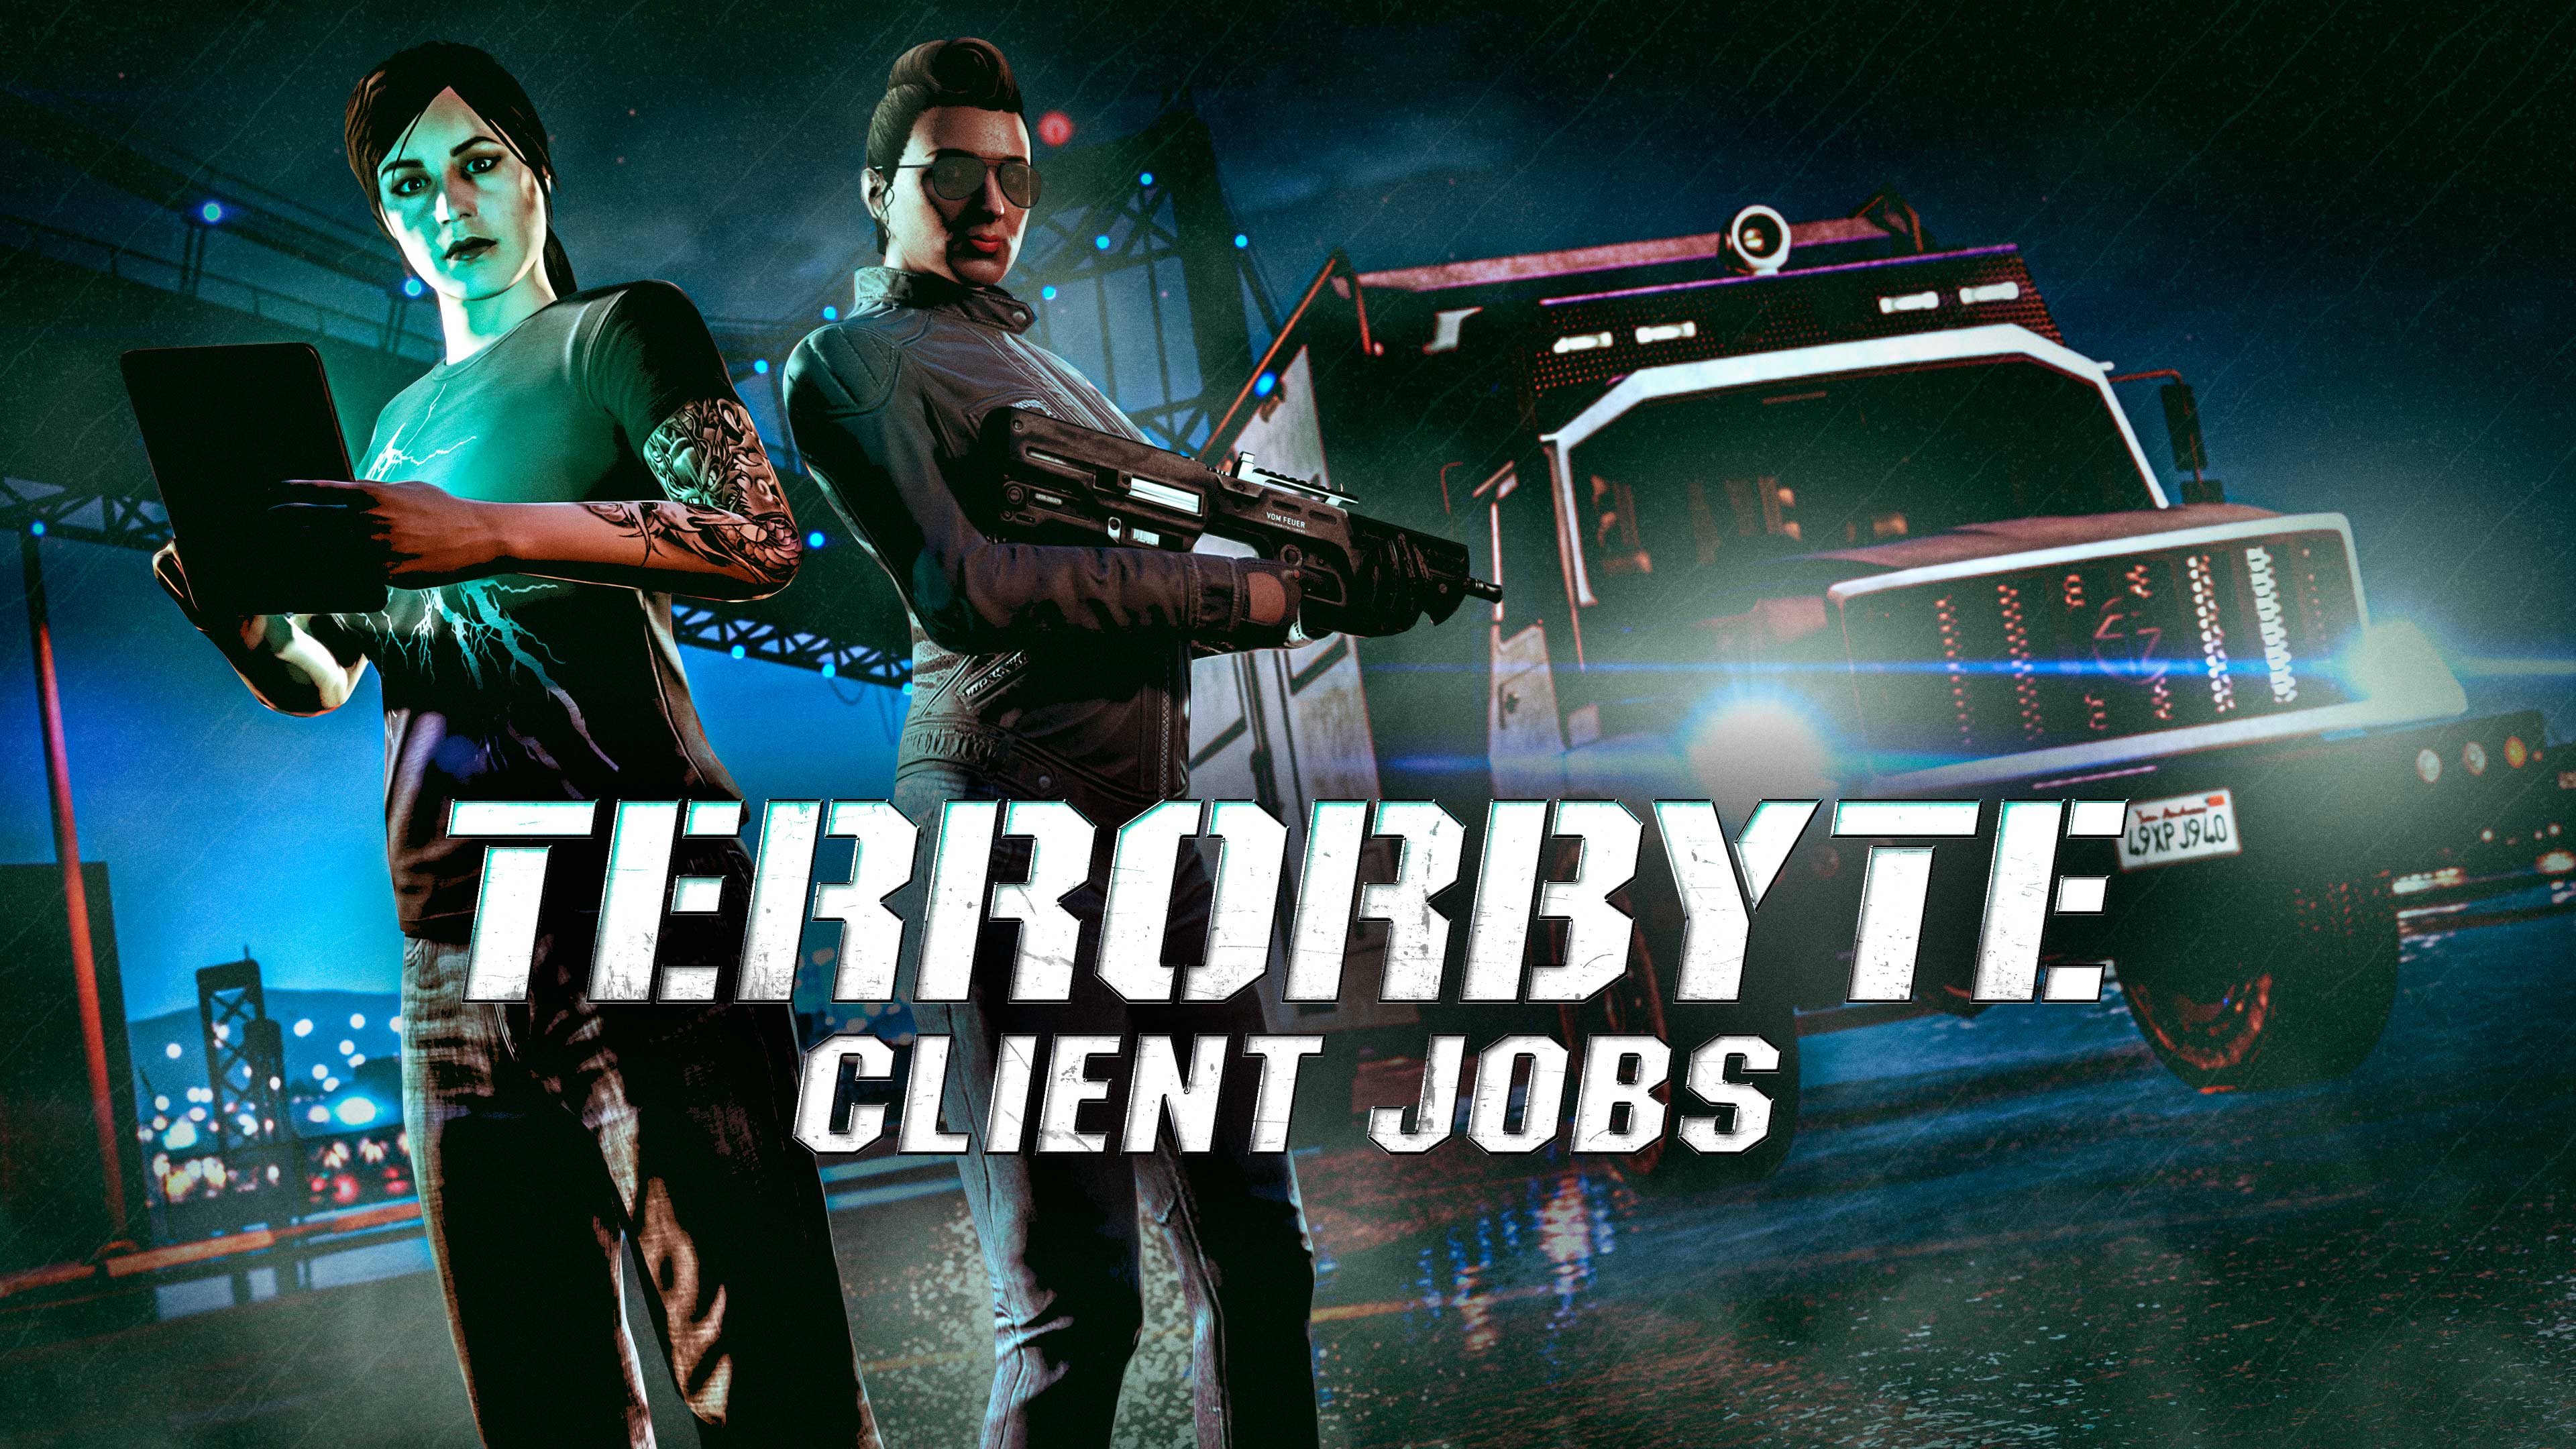 imagem de personagens no GTA Online e do Benefactor Terrorbyte com o logotipo dos Serviços de Clientes do Terrorbyte